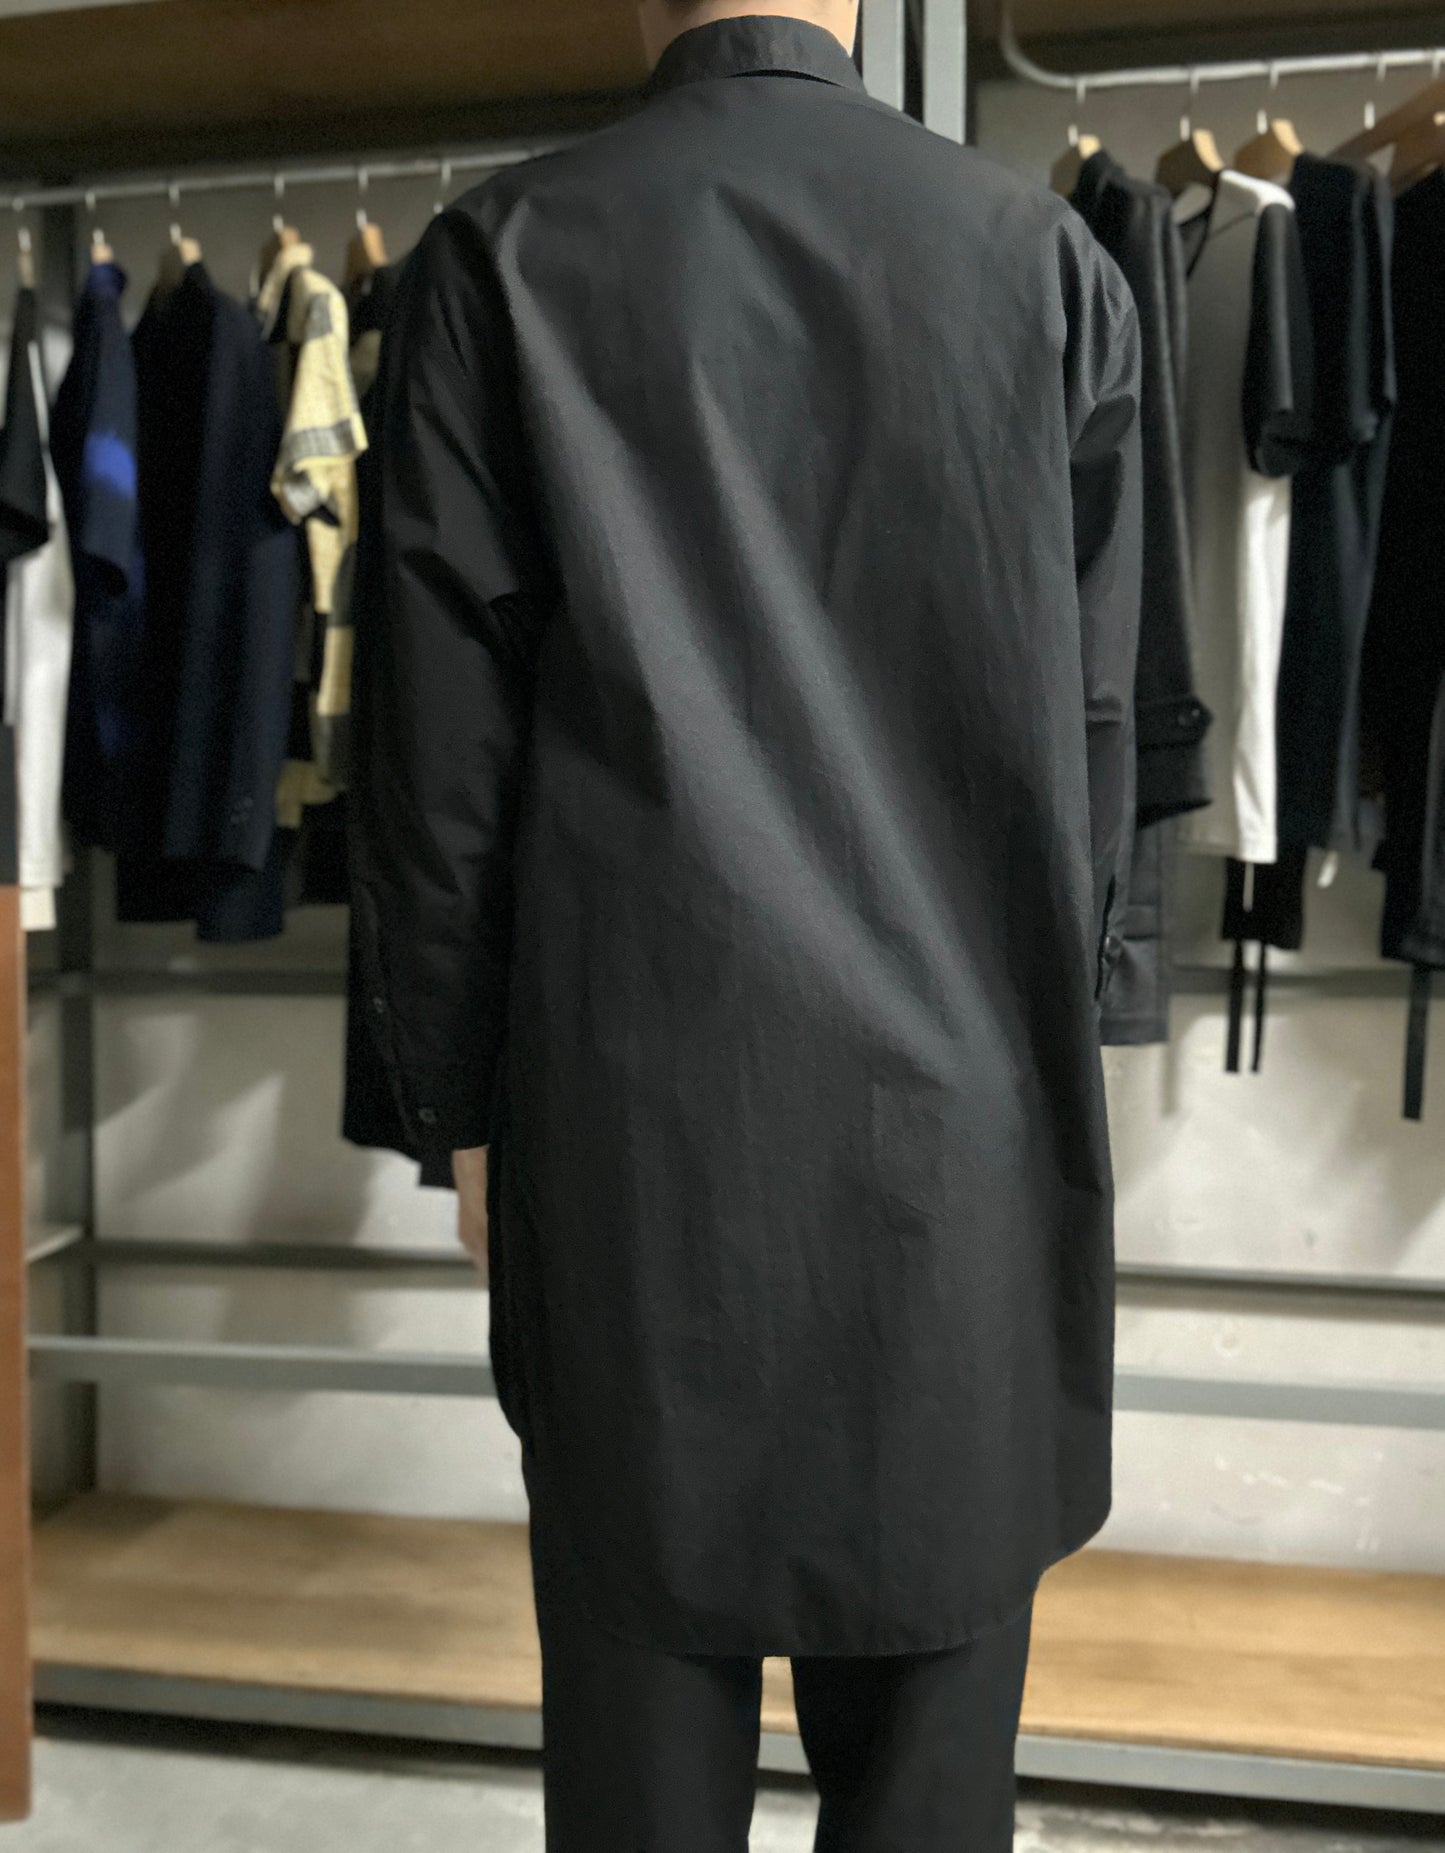 B Yohji Yamamoto Long Shirt-Size 1